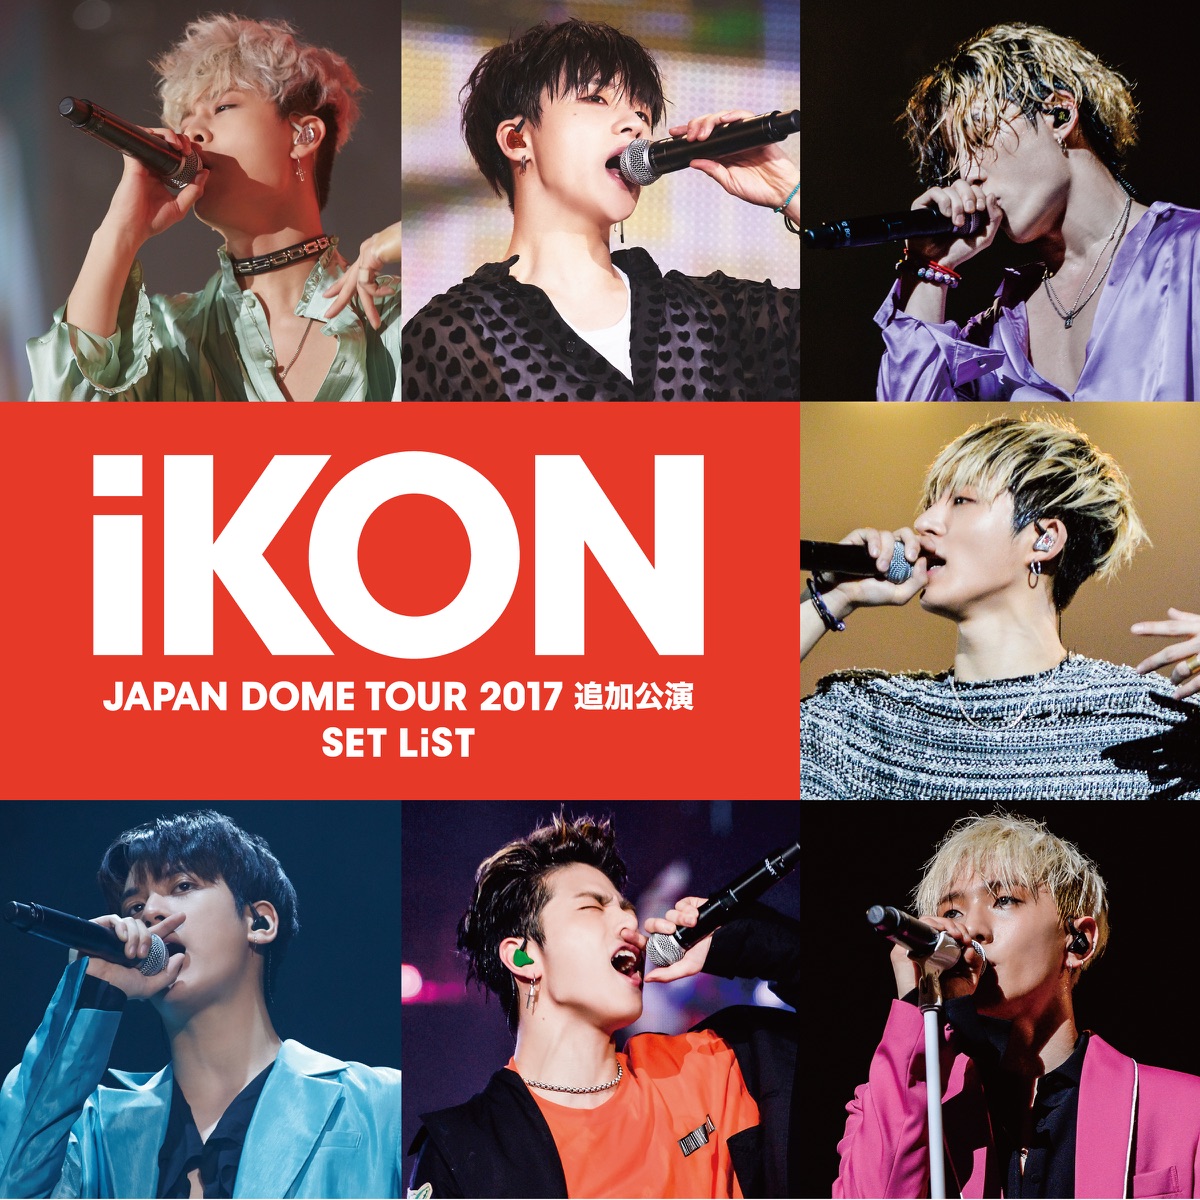 iKON – iKON JAPAN DOME TOUR 2017 追加公演 SET LIST